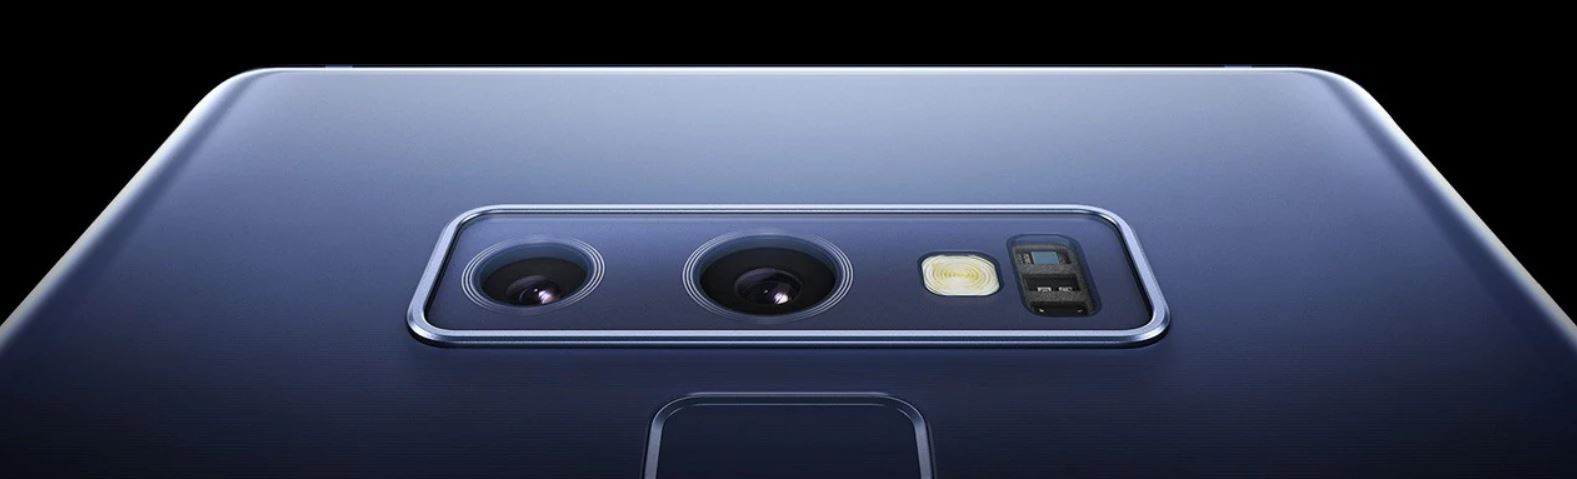 Samsung Galaxy Note 9 AI Dual Camera AndroidHits